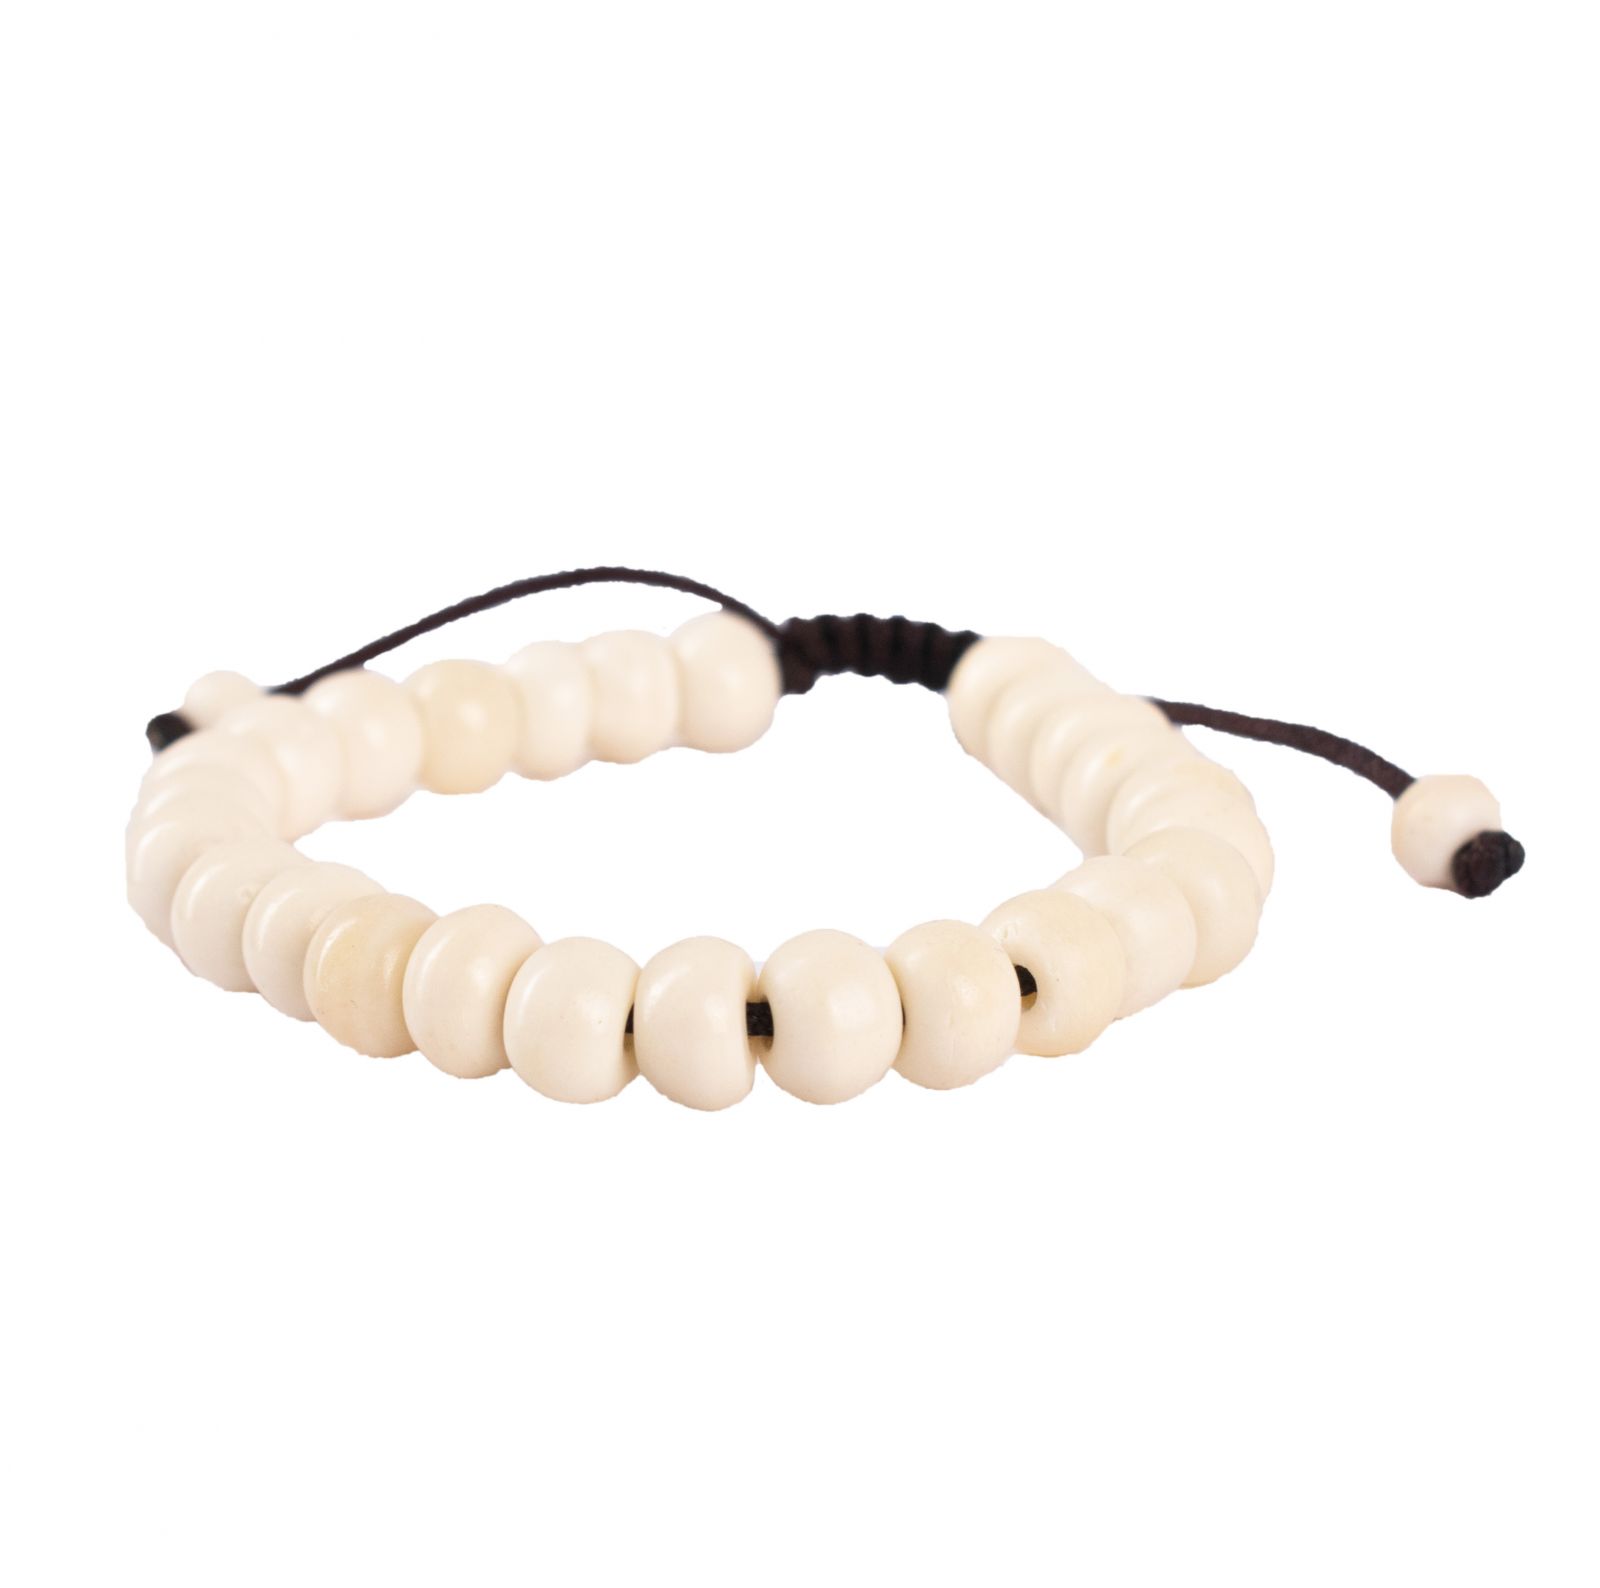 Knochen-Armband Weiße Perlen Nepal